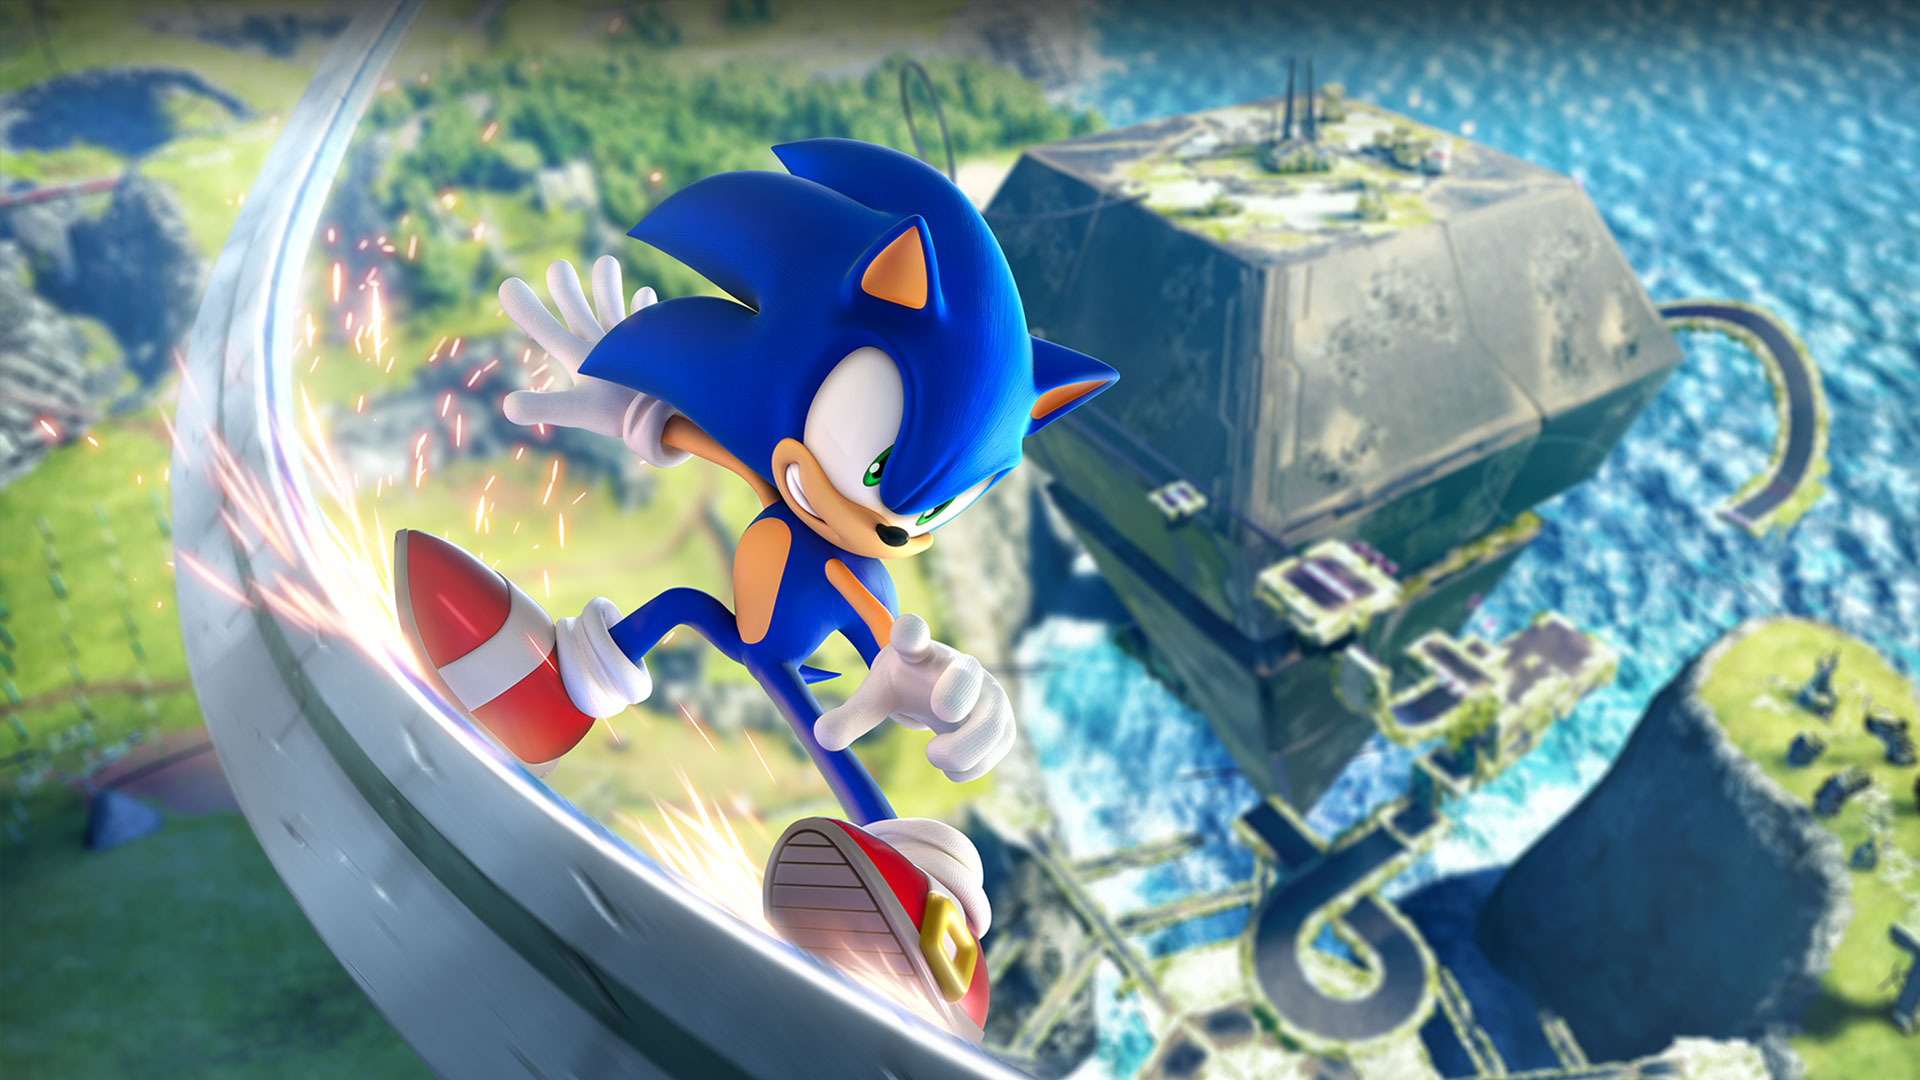 Sonic se balancea y desplaza por un riel a alta velocidad muy por encima de la zona verde.